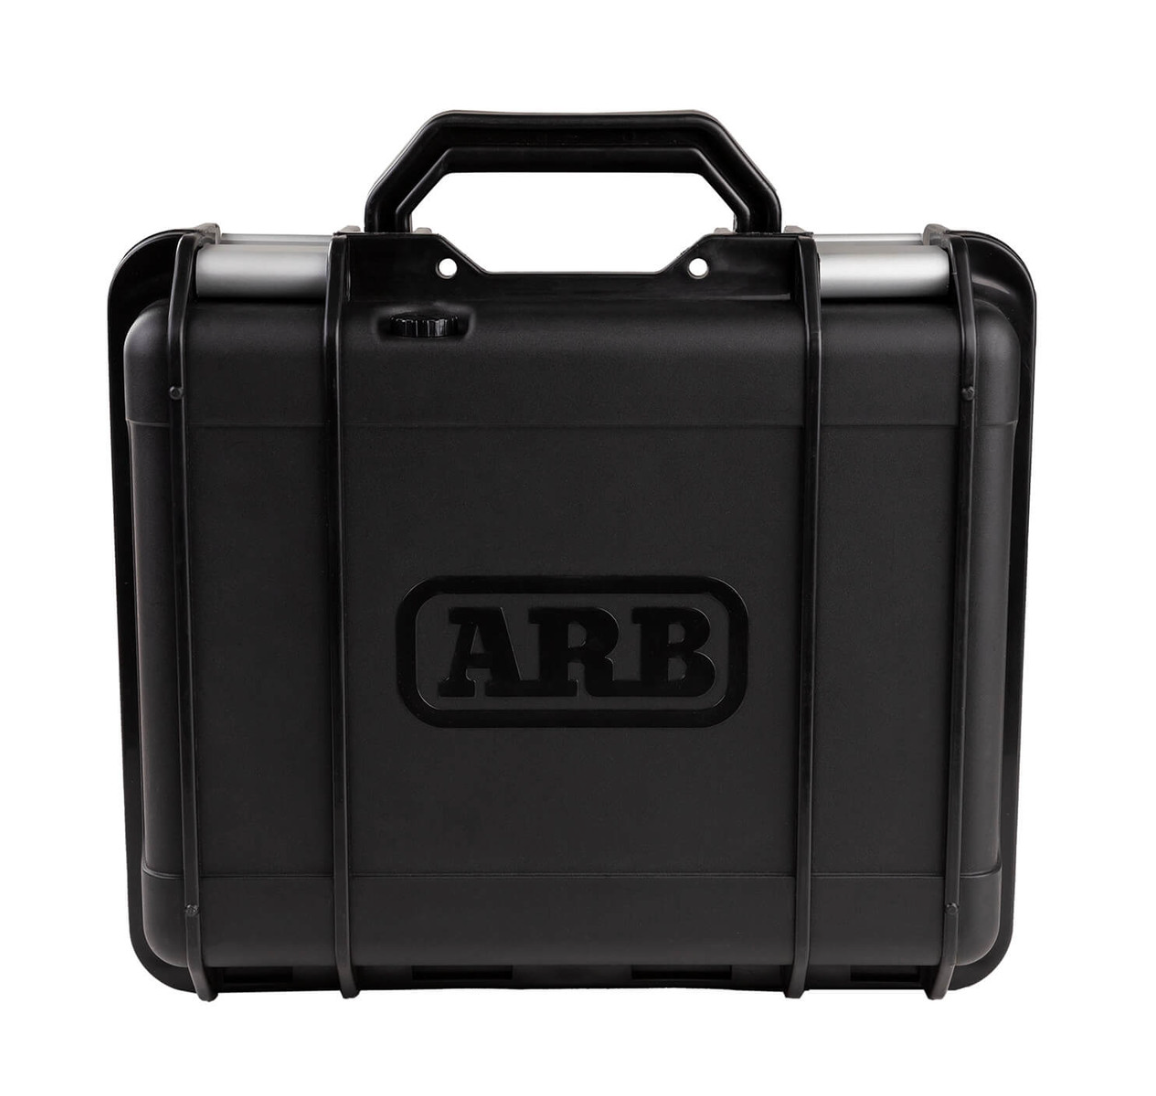 Single Motor Portable 12V Air Compressor by ARB